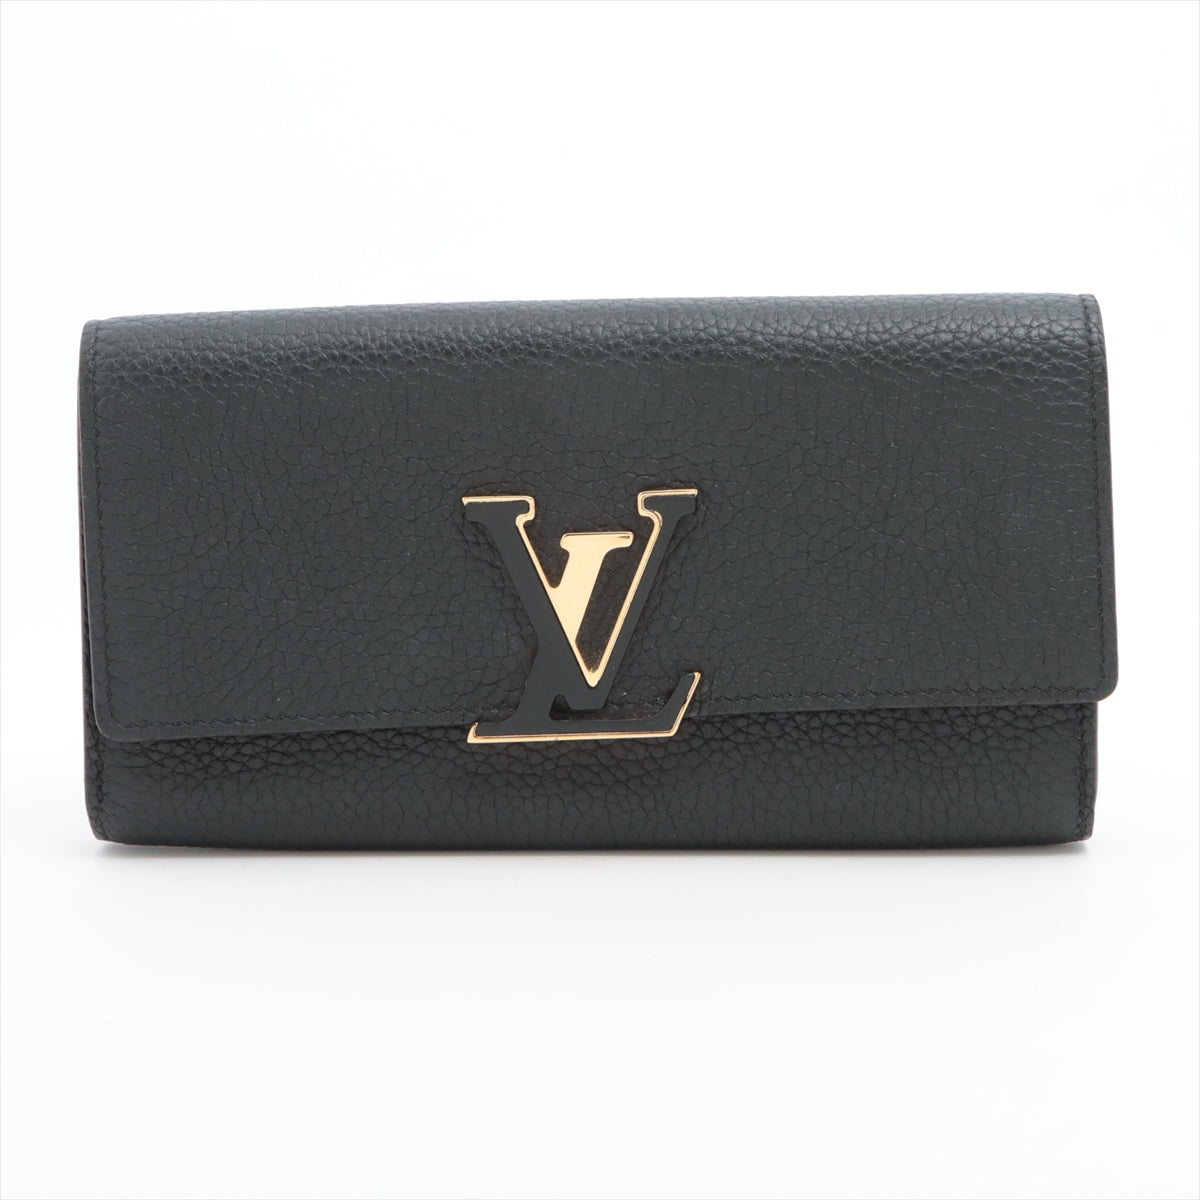 Louis Vuitton Taurillon Portefeuille Capucines M61248 Noir × Hot pink Long Wallet Responsive RFID